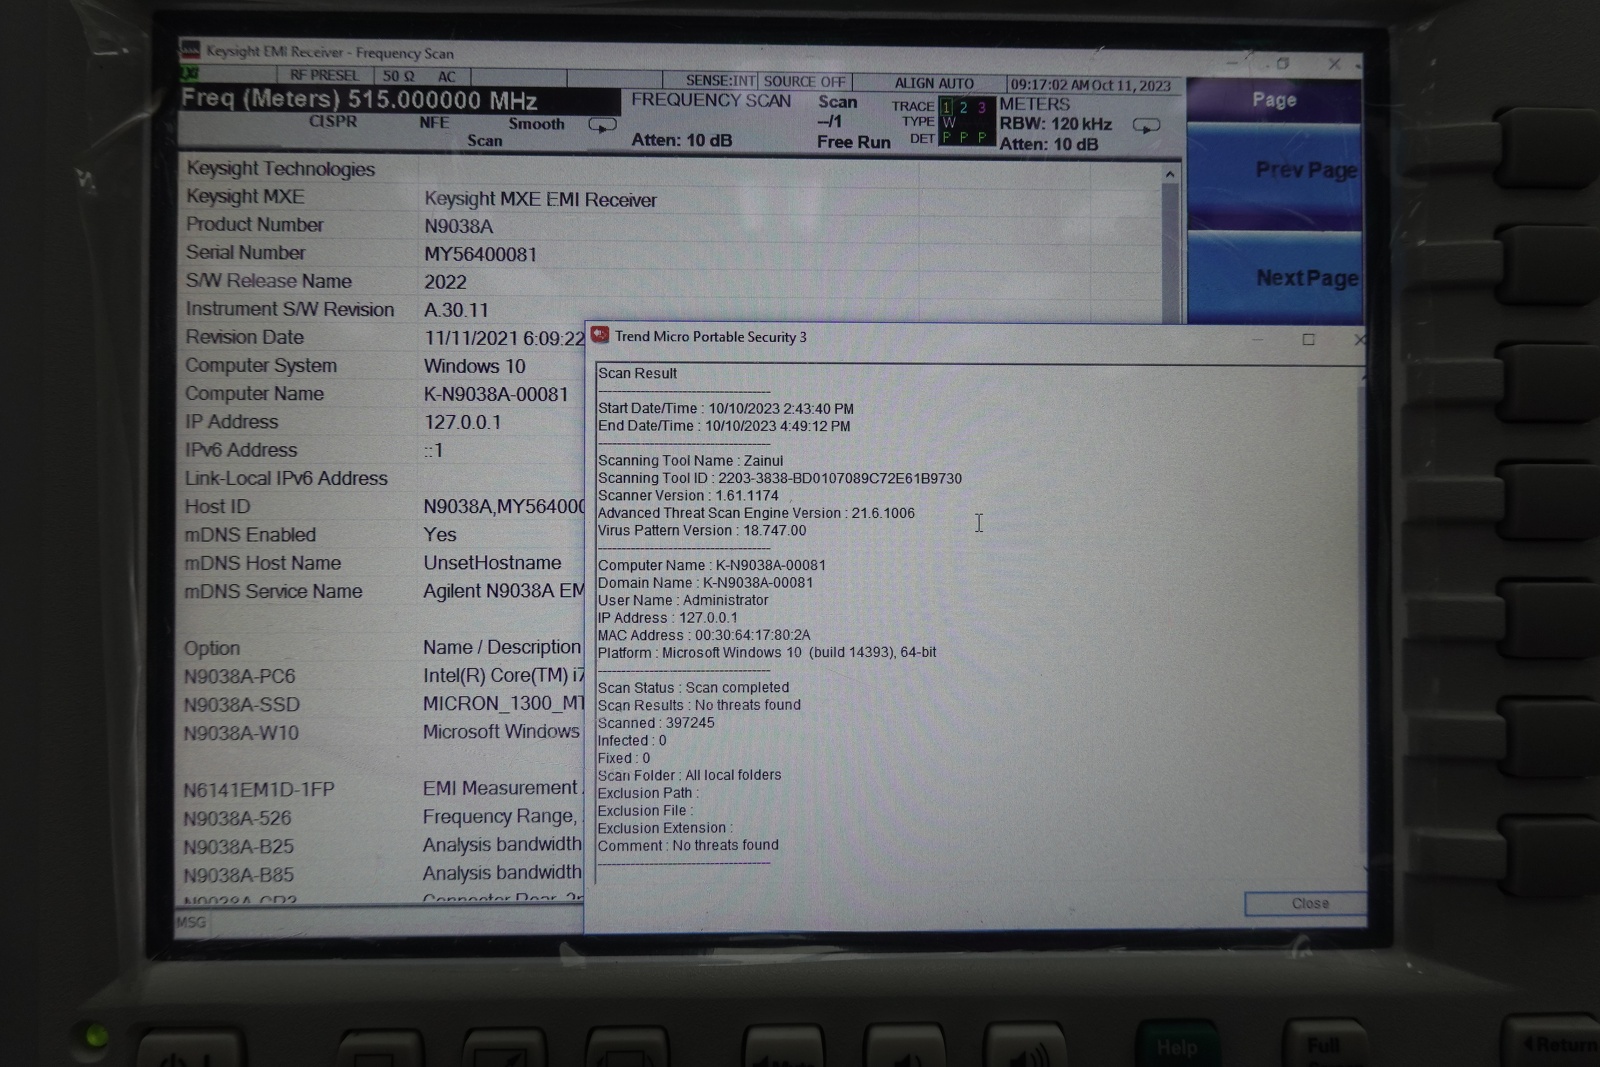 Keysight N9038A-526 3 Hz to 26.5 GHz